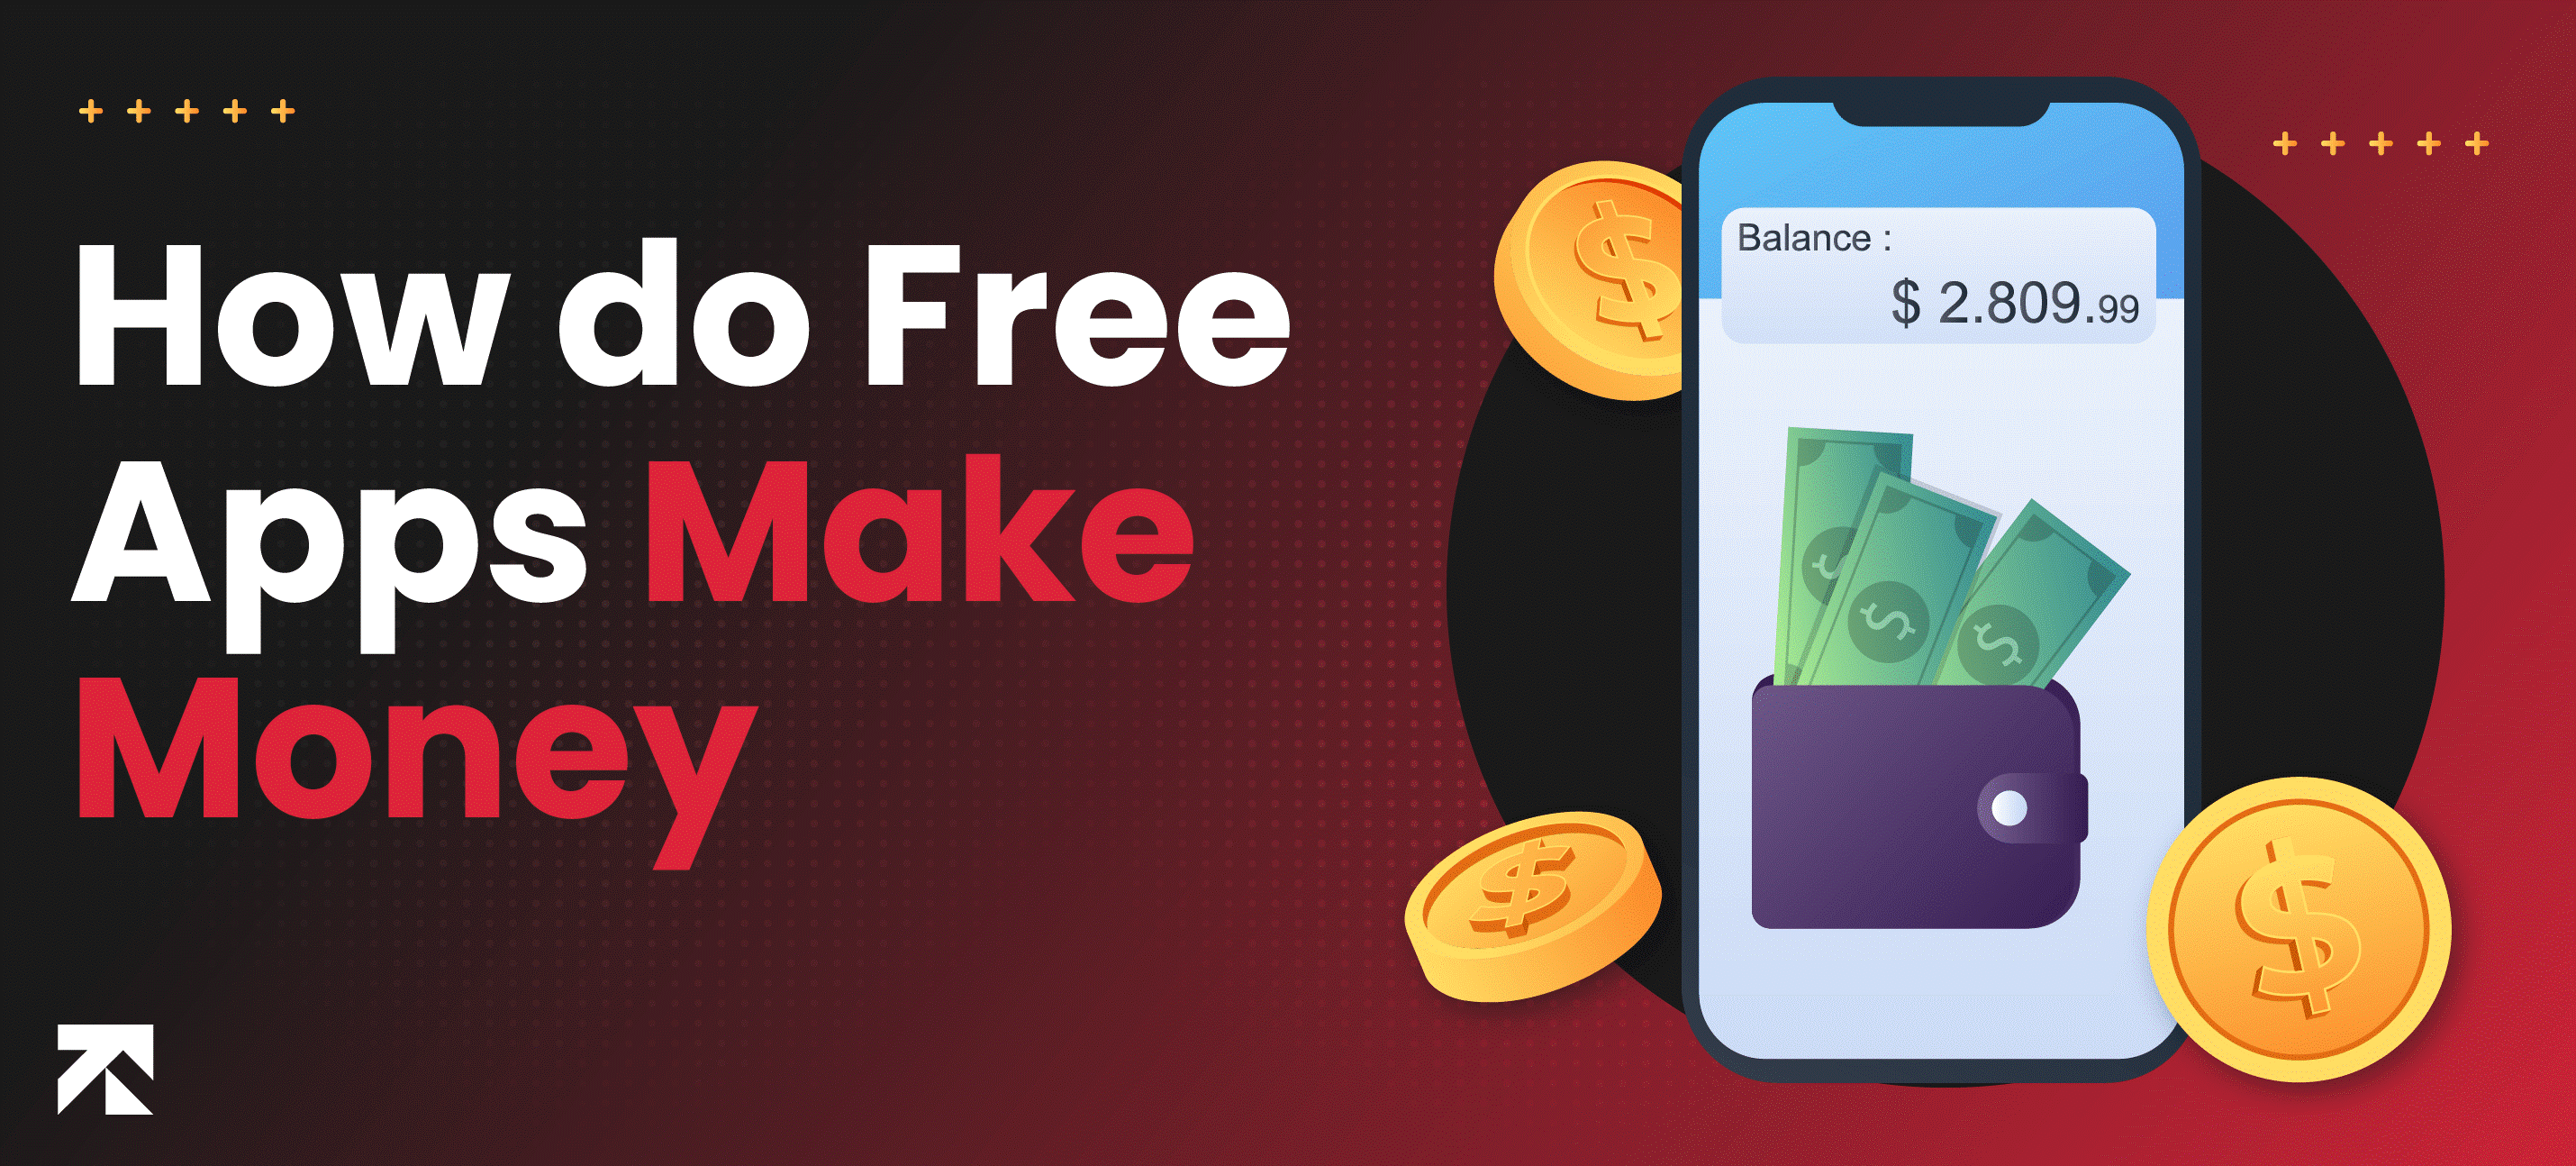 How Do Free apps Make Money